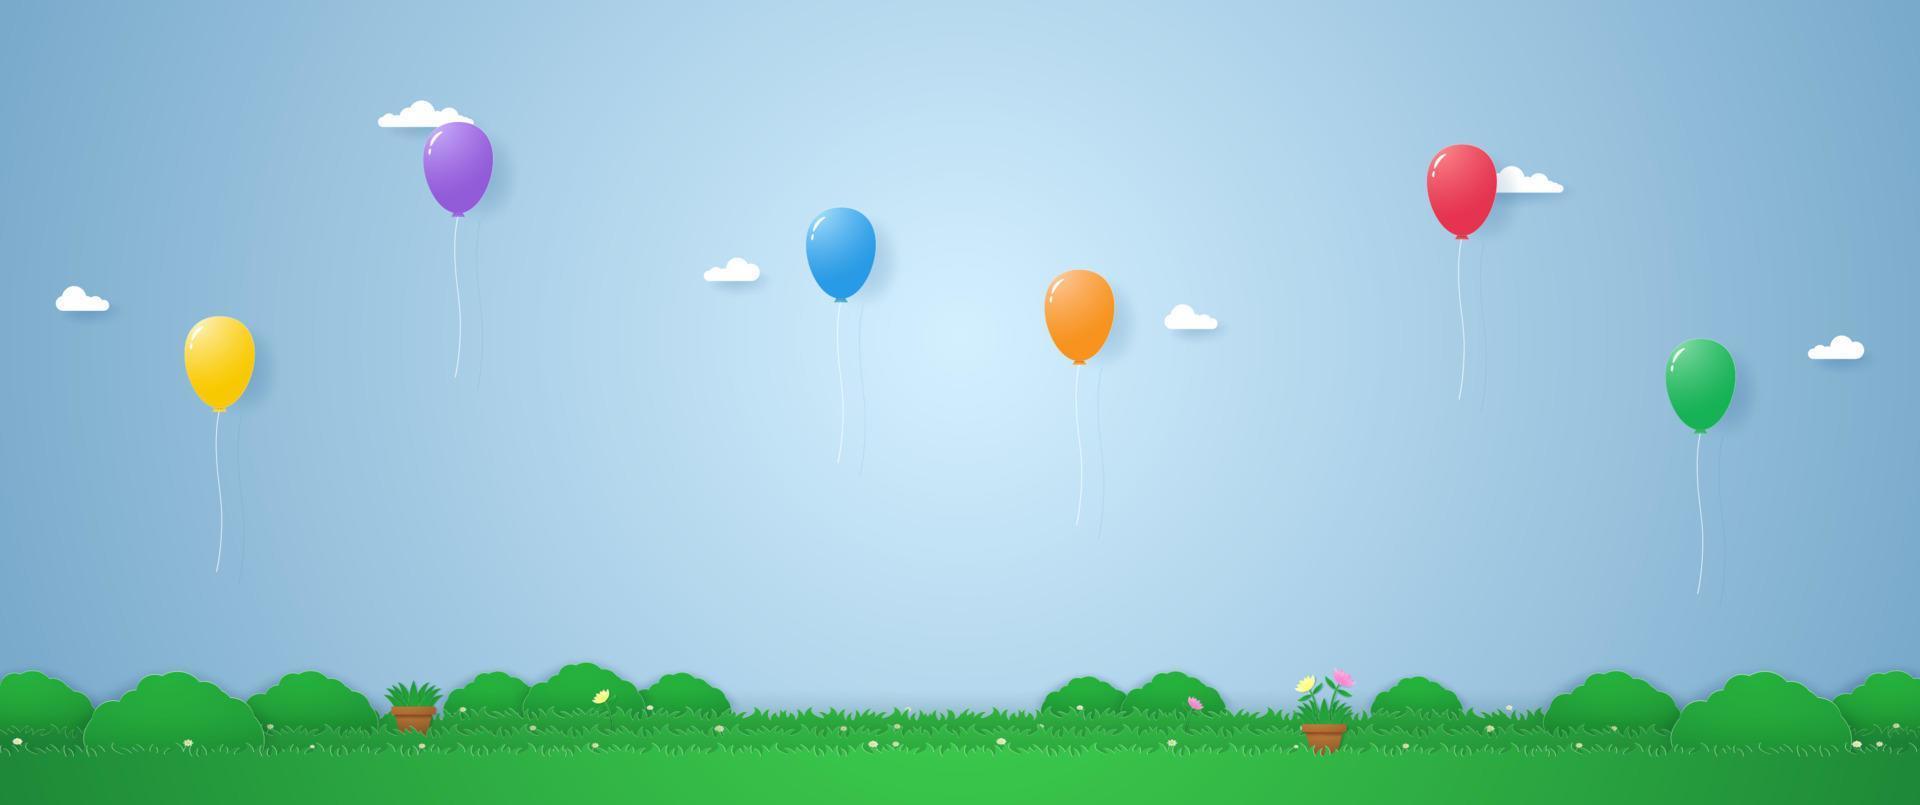 balões coloridos flutuando sobre a grama em estilo de arte em papel vetor